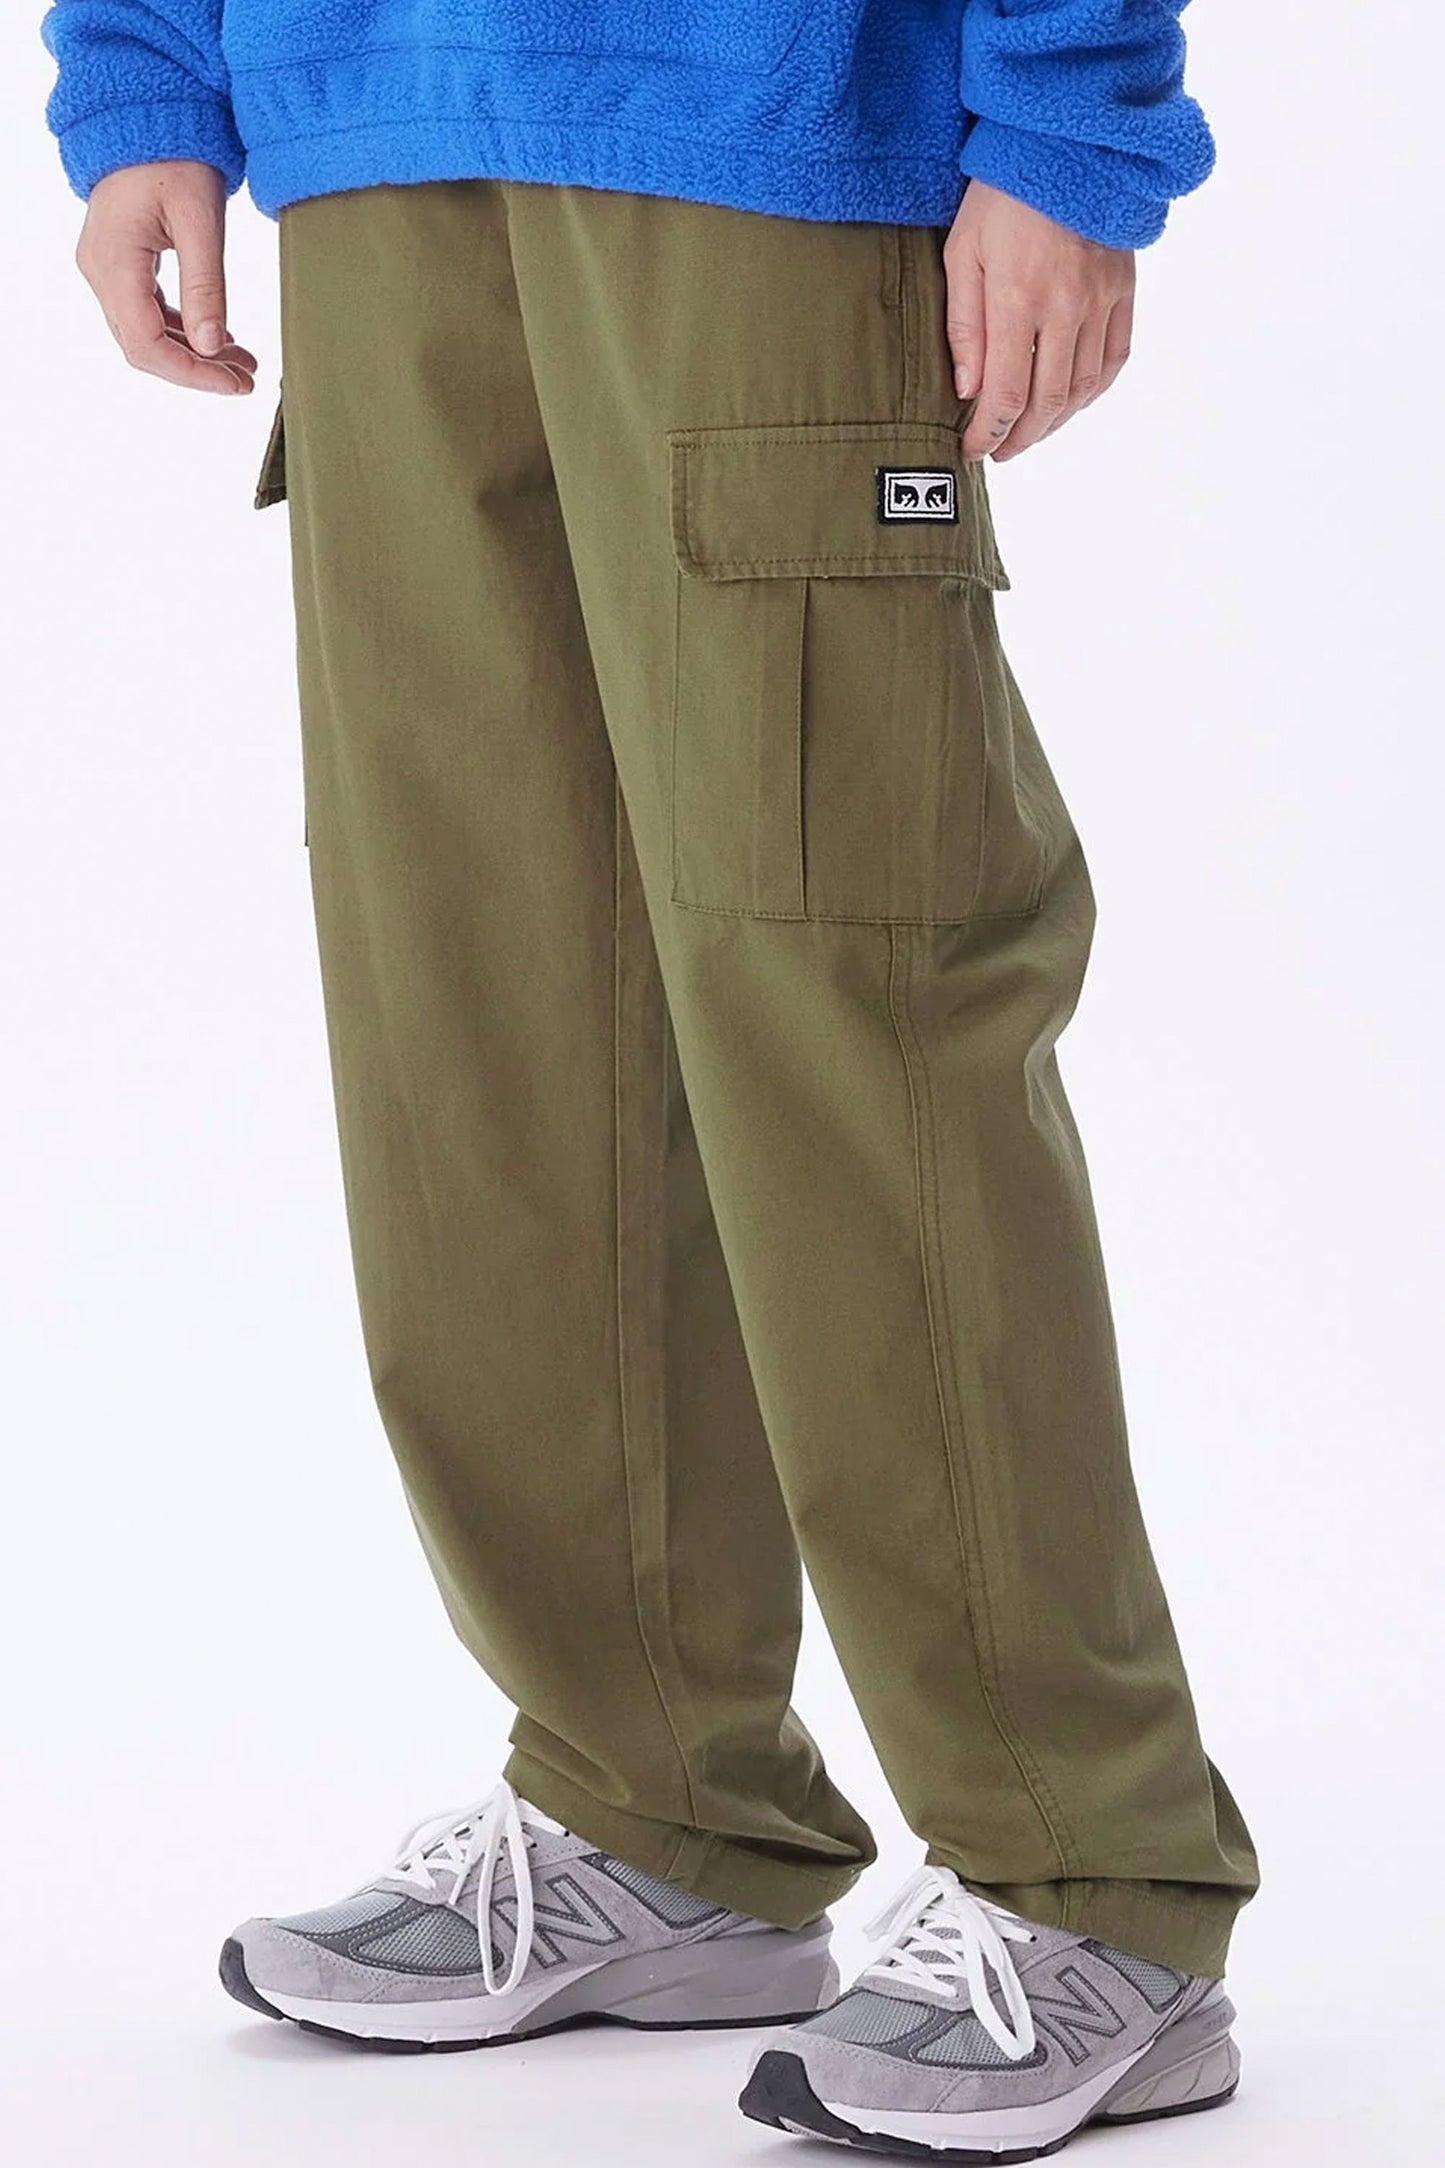 Obey Combat Cargo Pants  PacSun  Cargo pants beige Cargo pants Pants  for women